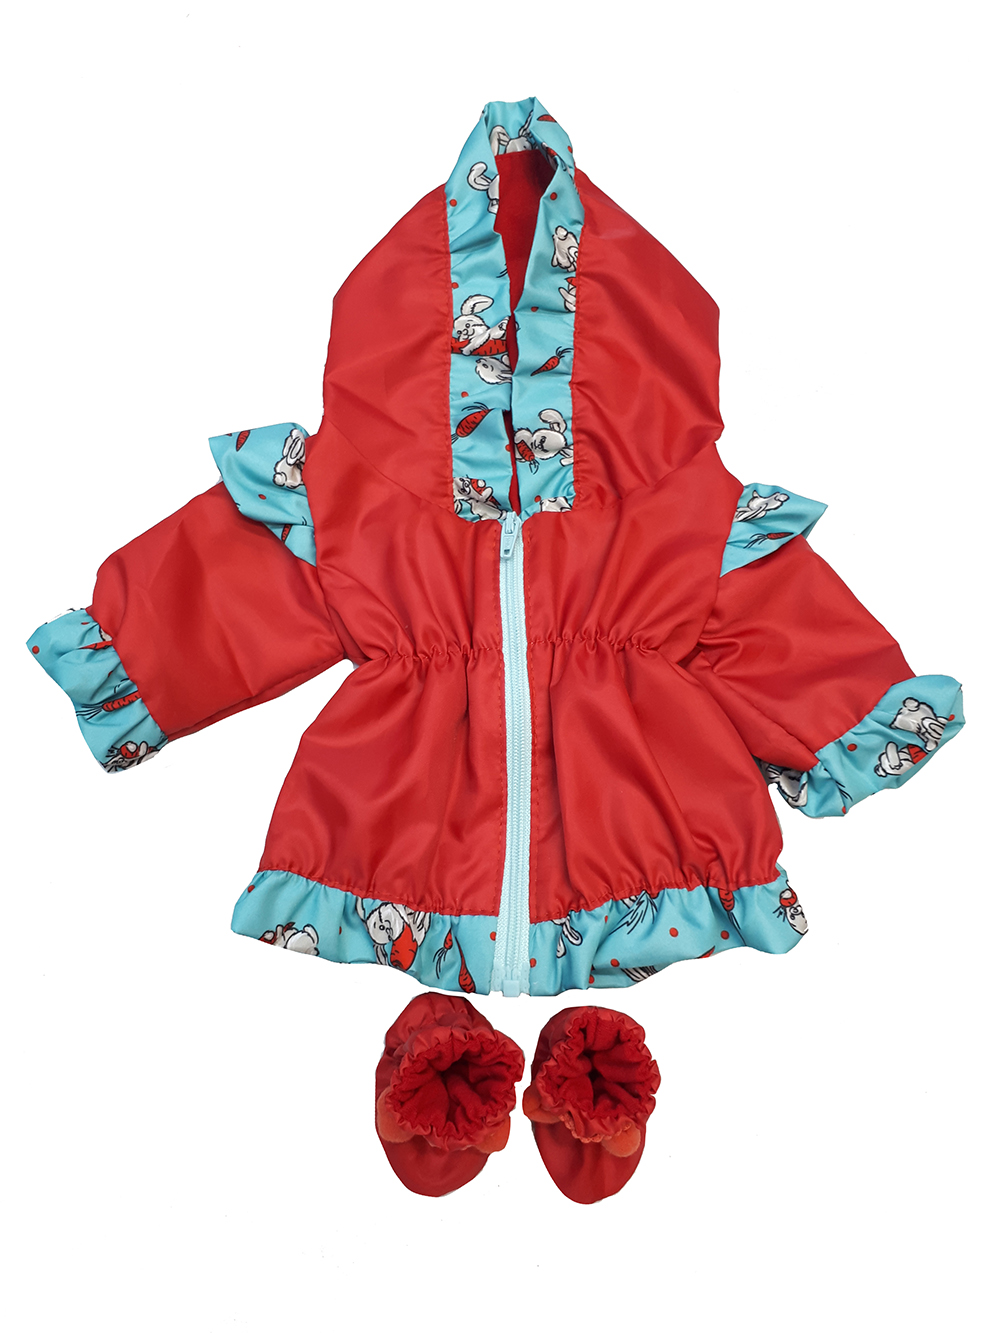 Курточка ветровка и сапоги Дутыши для куклы Колибри 93 Красный,бирюзовый сапоги с отворотами для куклы длина подошвы 7 5 см красный